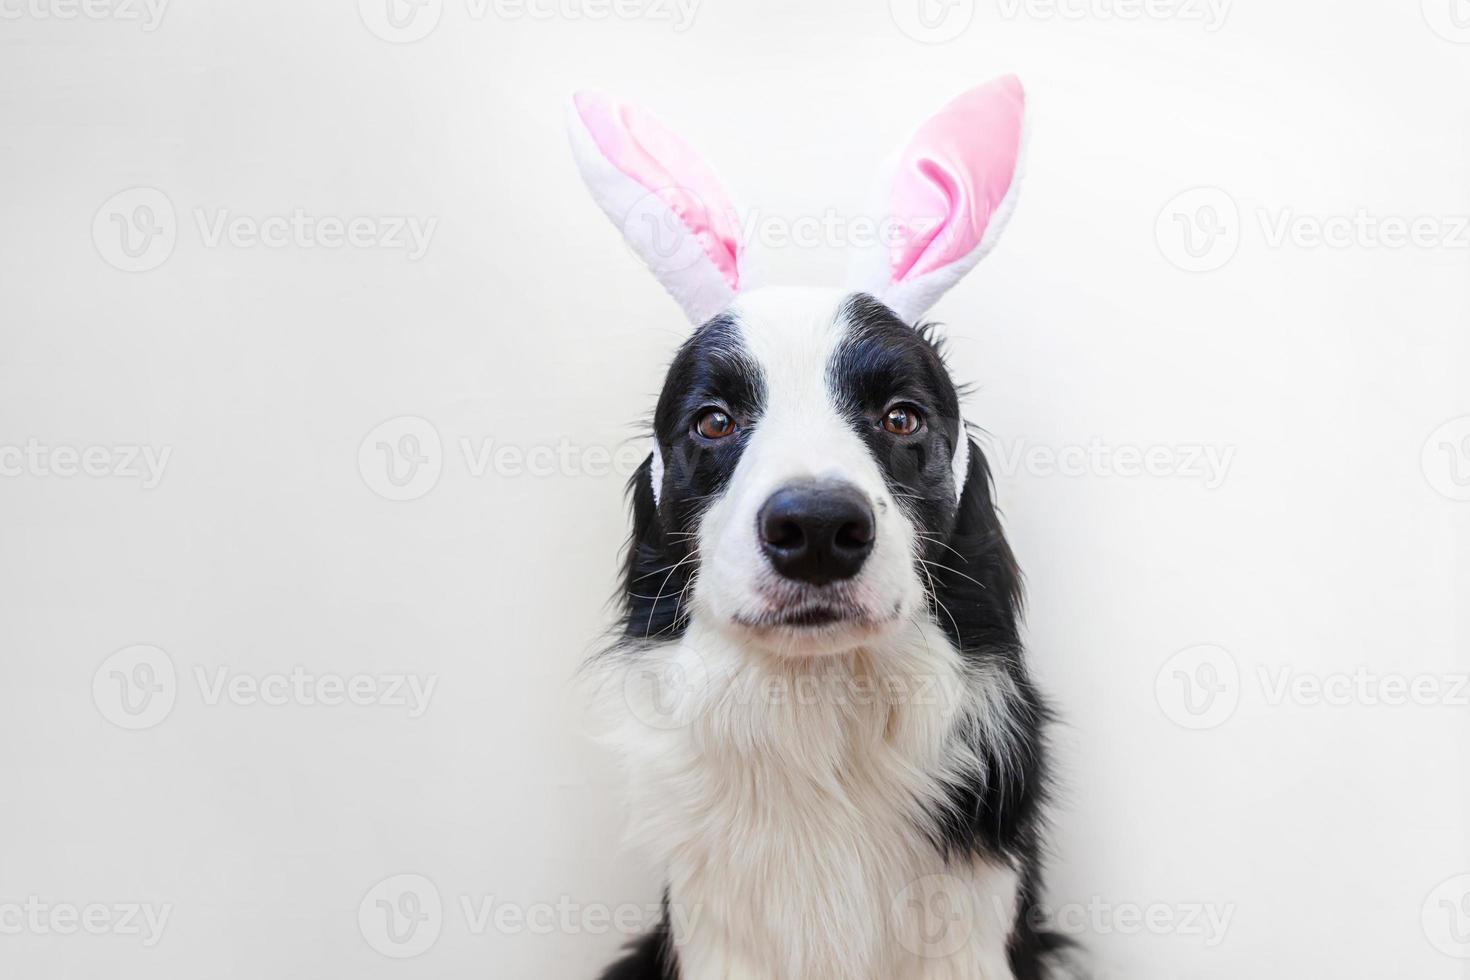 concetto di buona pasqua. divertente ritratto di simpatico cucciolo sorridente cane border collie che indossa orecchie da coniglio pasquale isolate su sfondo bianco foto